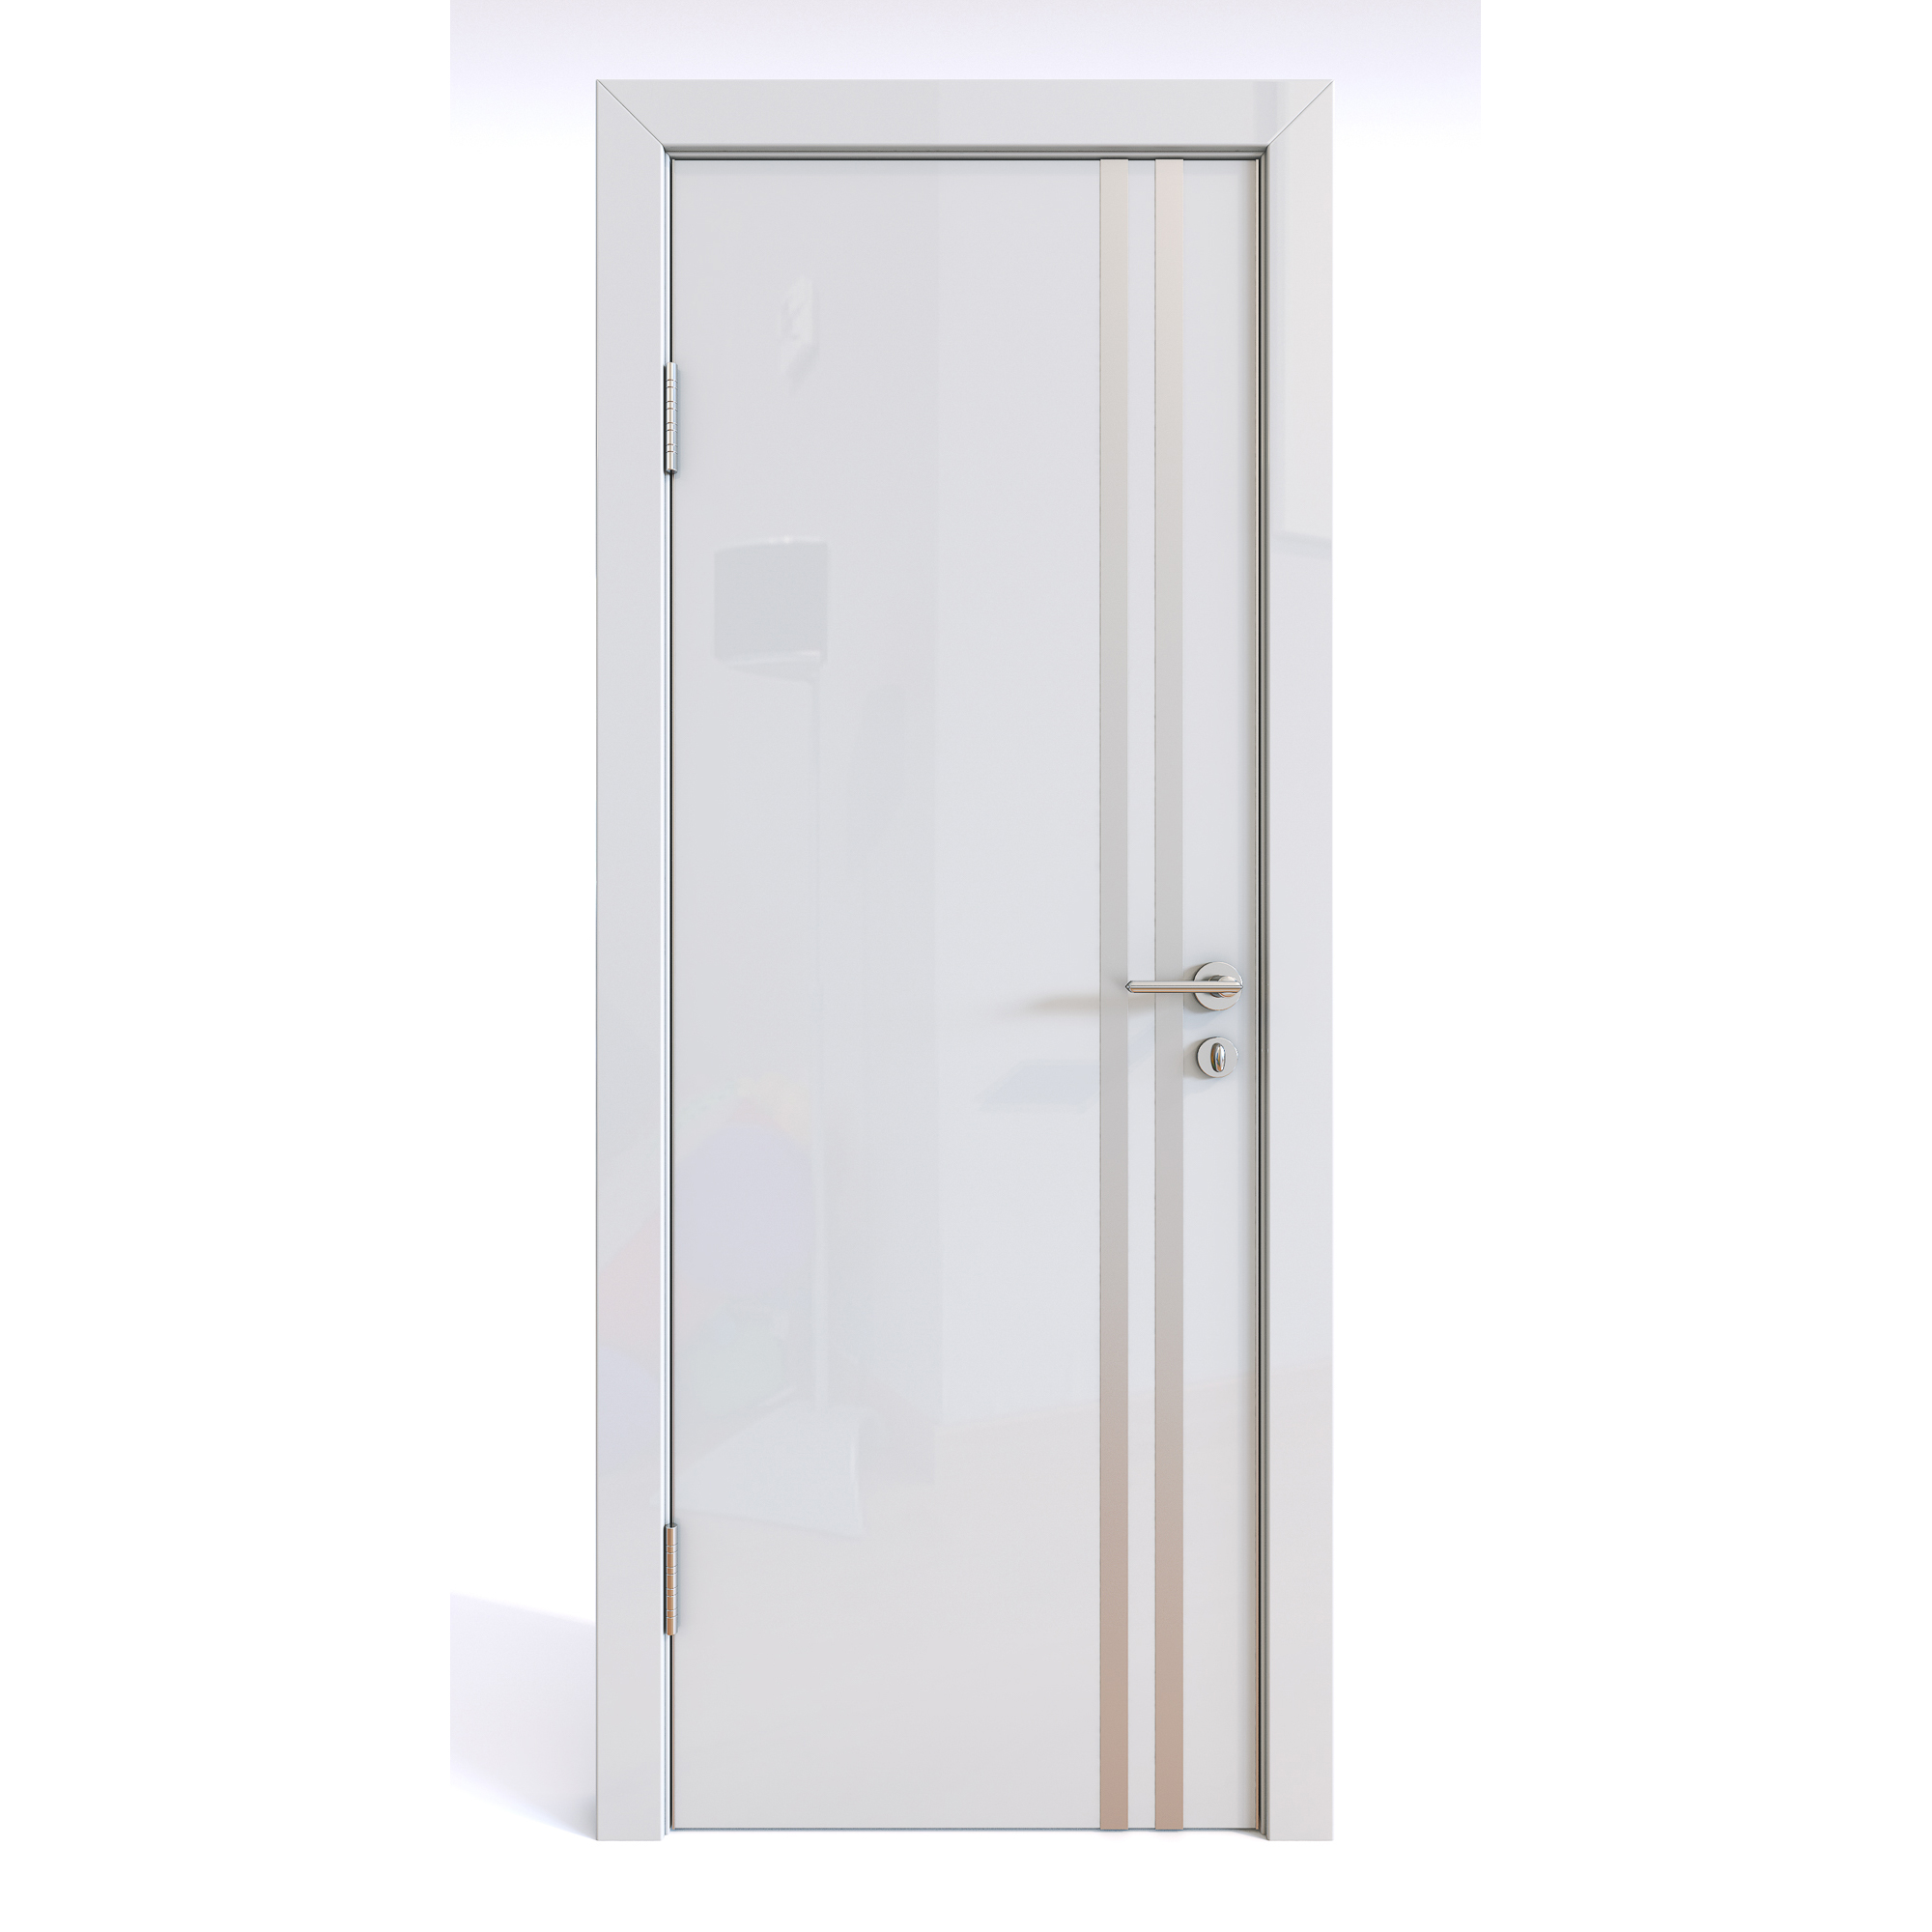 фото Межкомнатная шумоизоляционная дверь дг-606/2 белый глянец 200х90 дверная линия